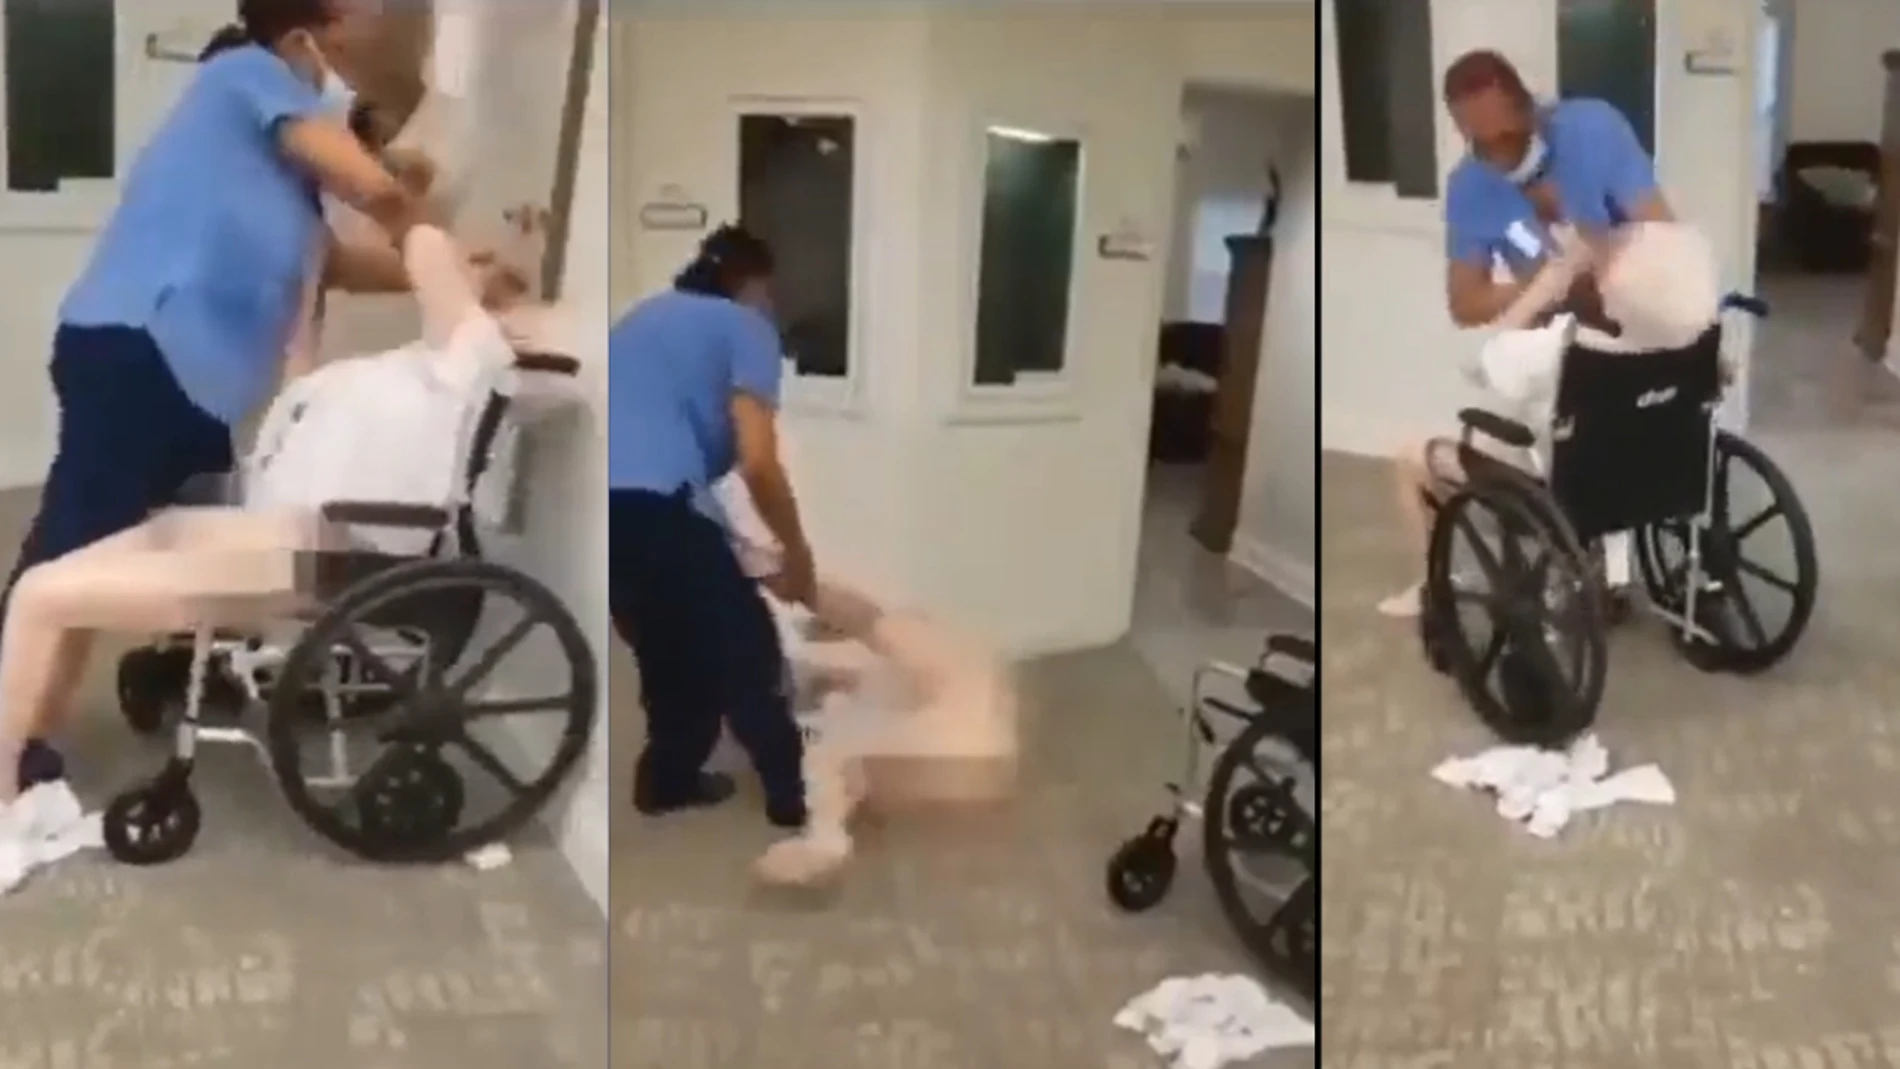 Una cuidadora golpea a una anciana en una residencia